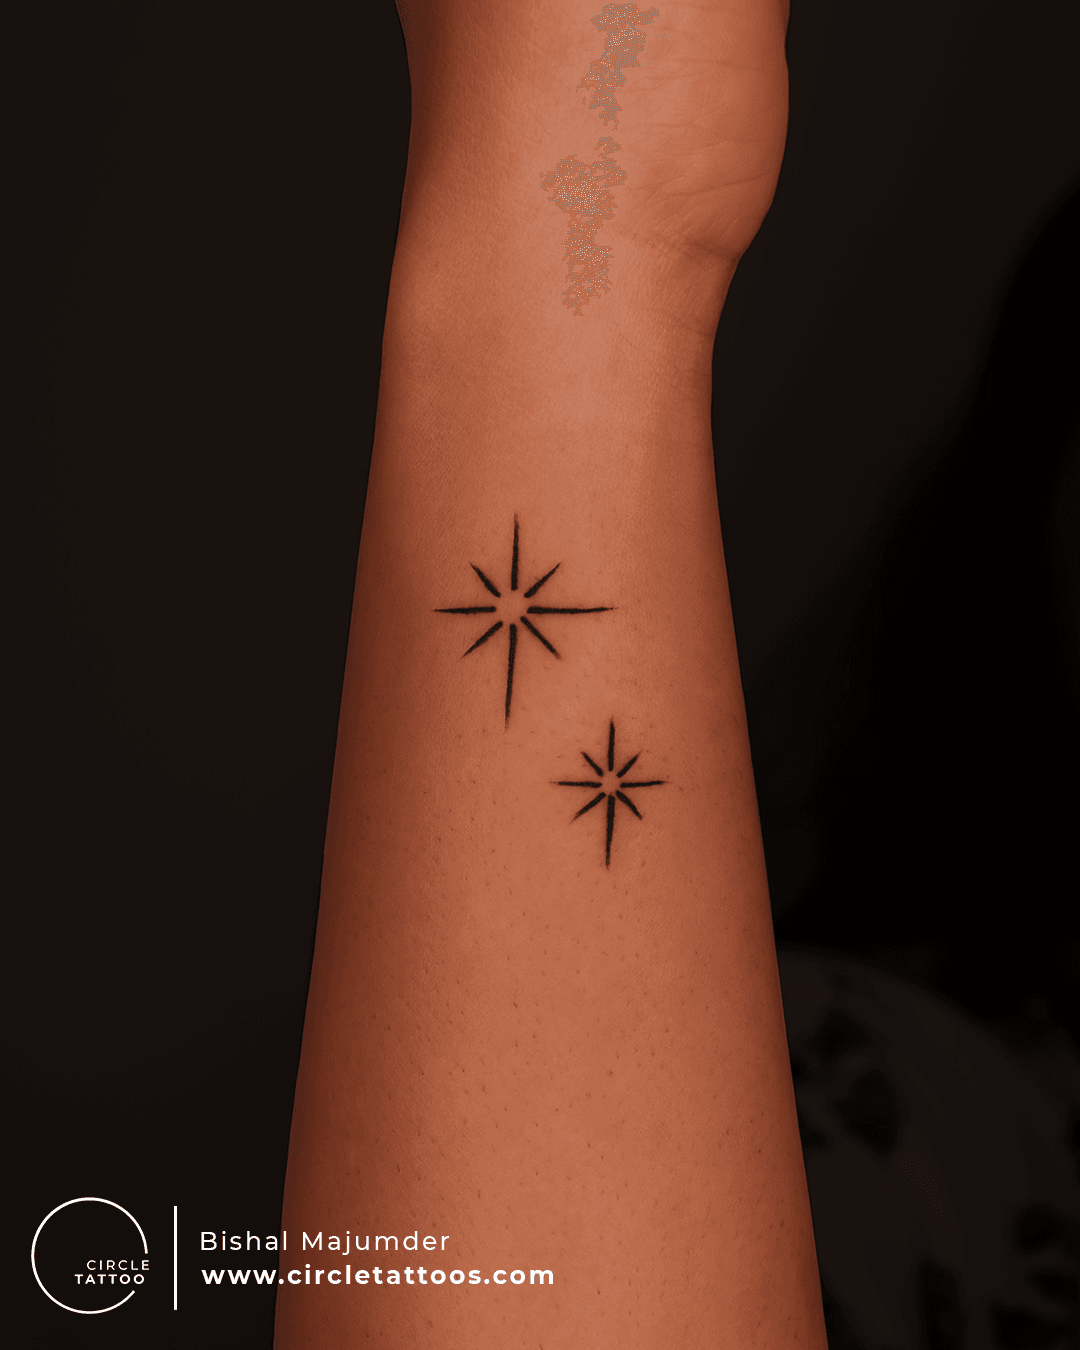 Showing my twinkle twinkle purple star tattoo  Flickr